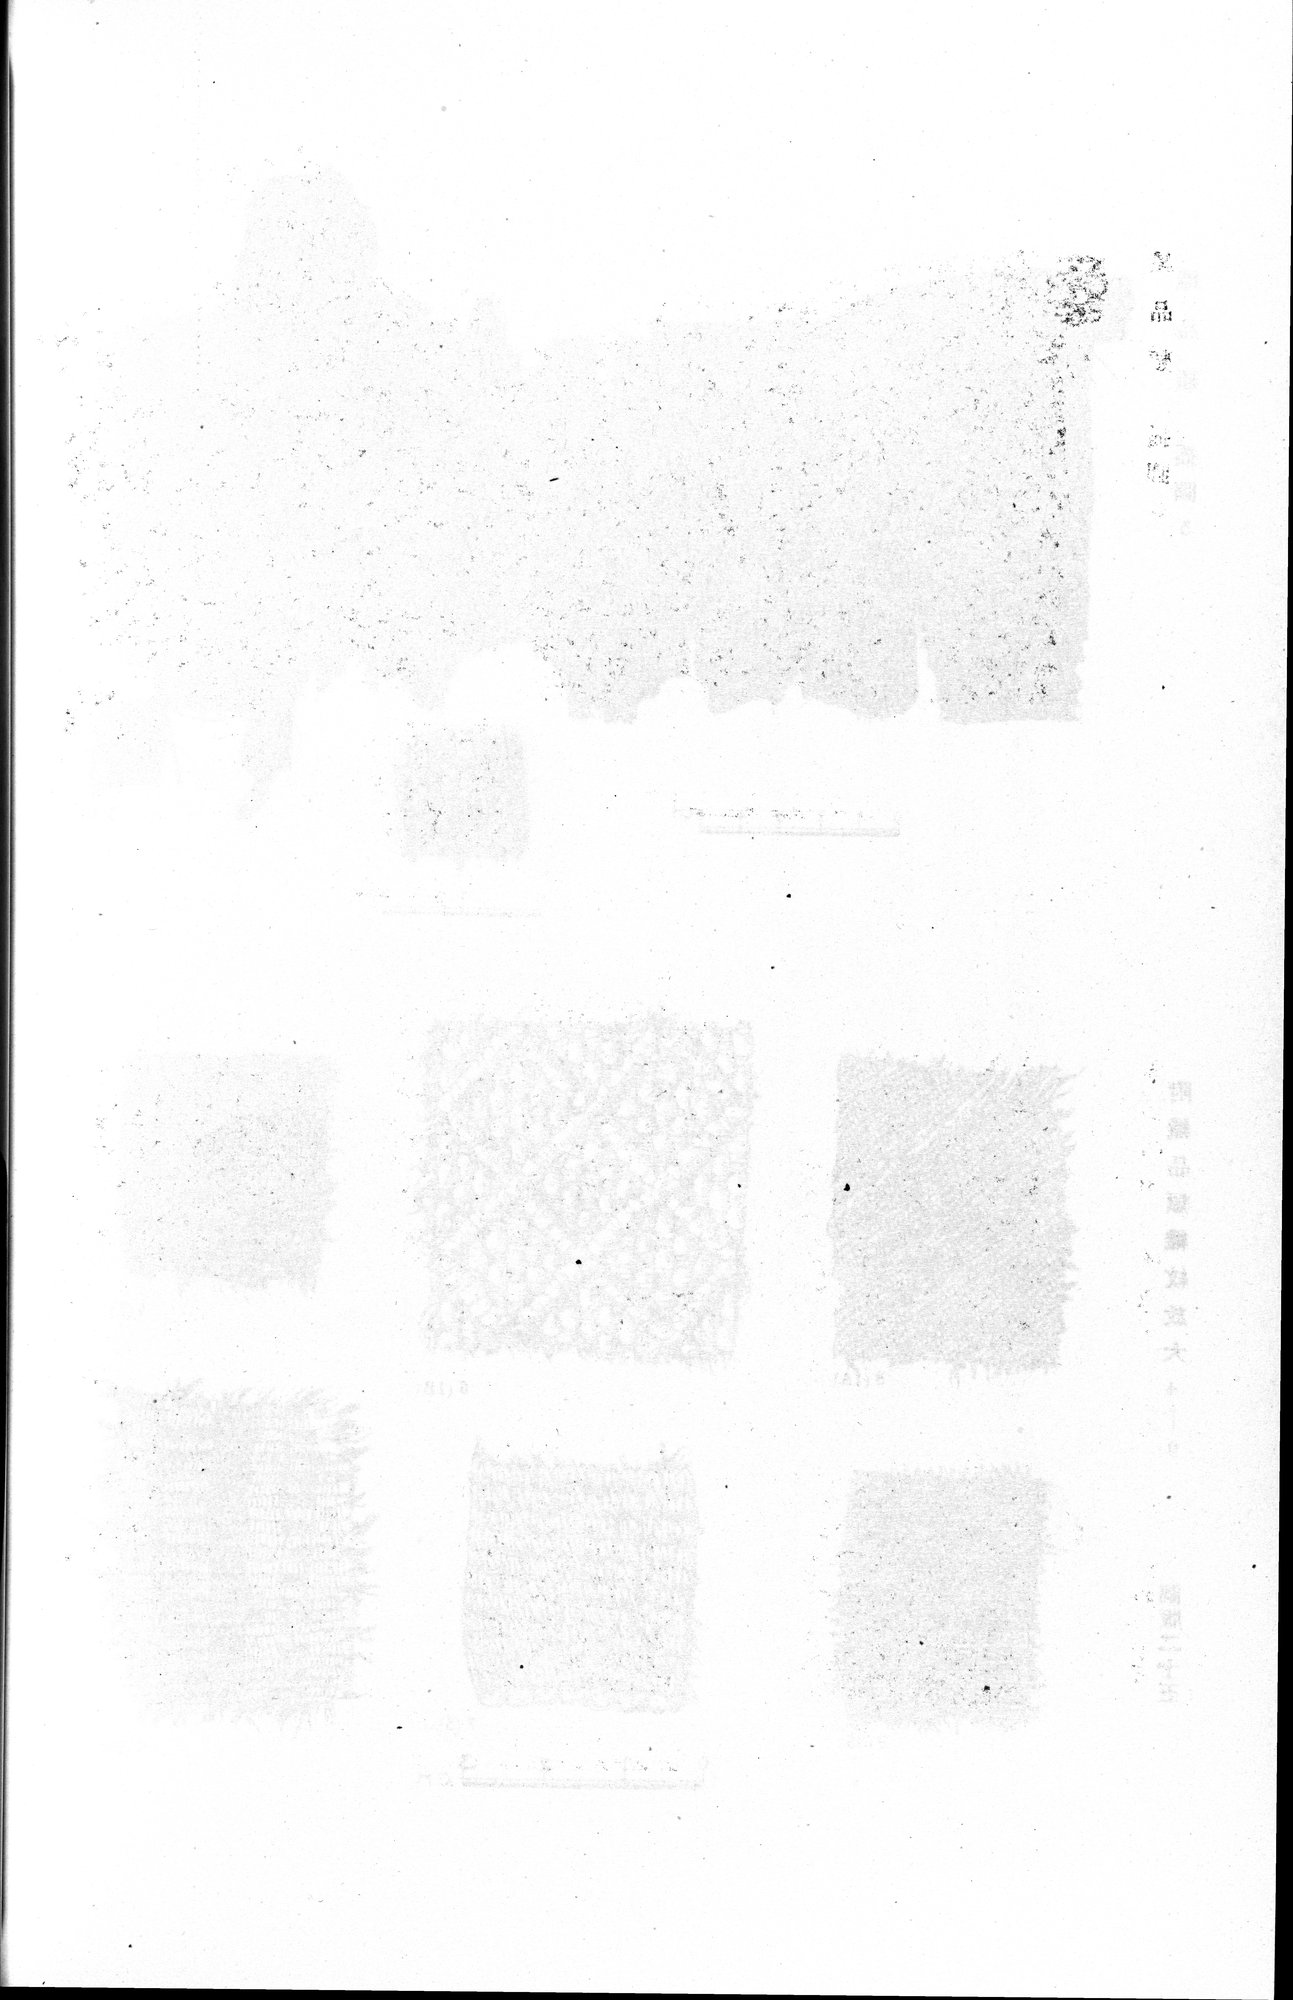 羅布淖爾考古記 : vol.1 / Page 342 (Grayscale High Resolution Image)